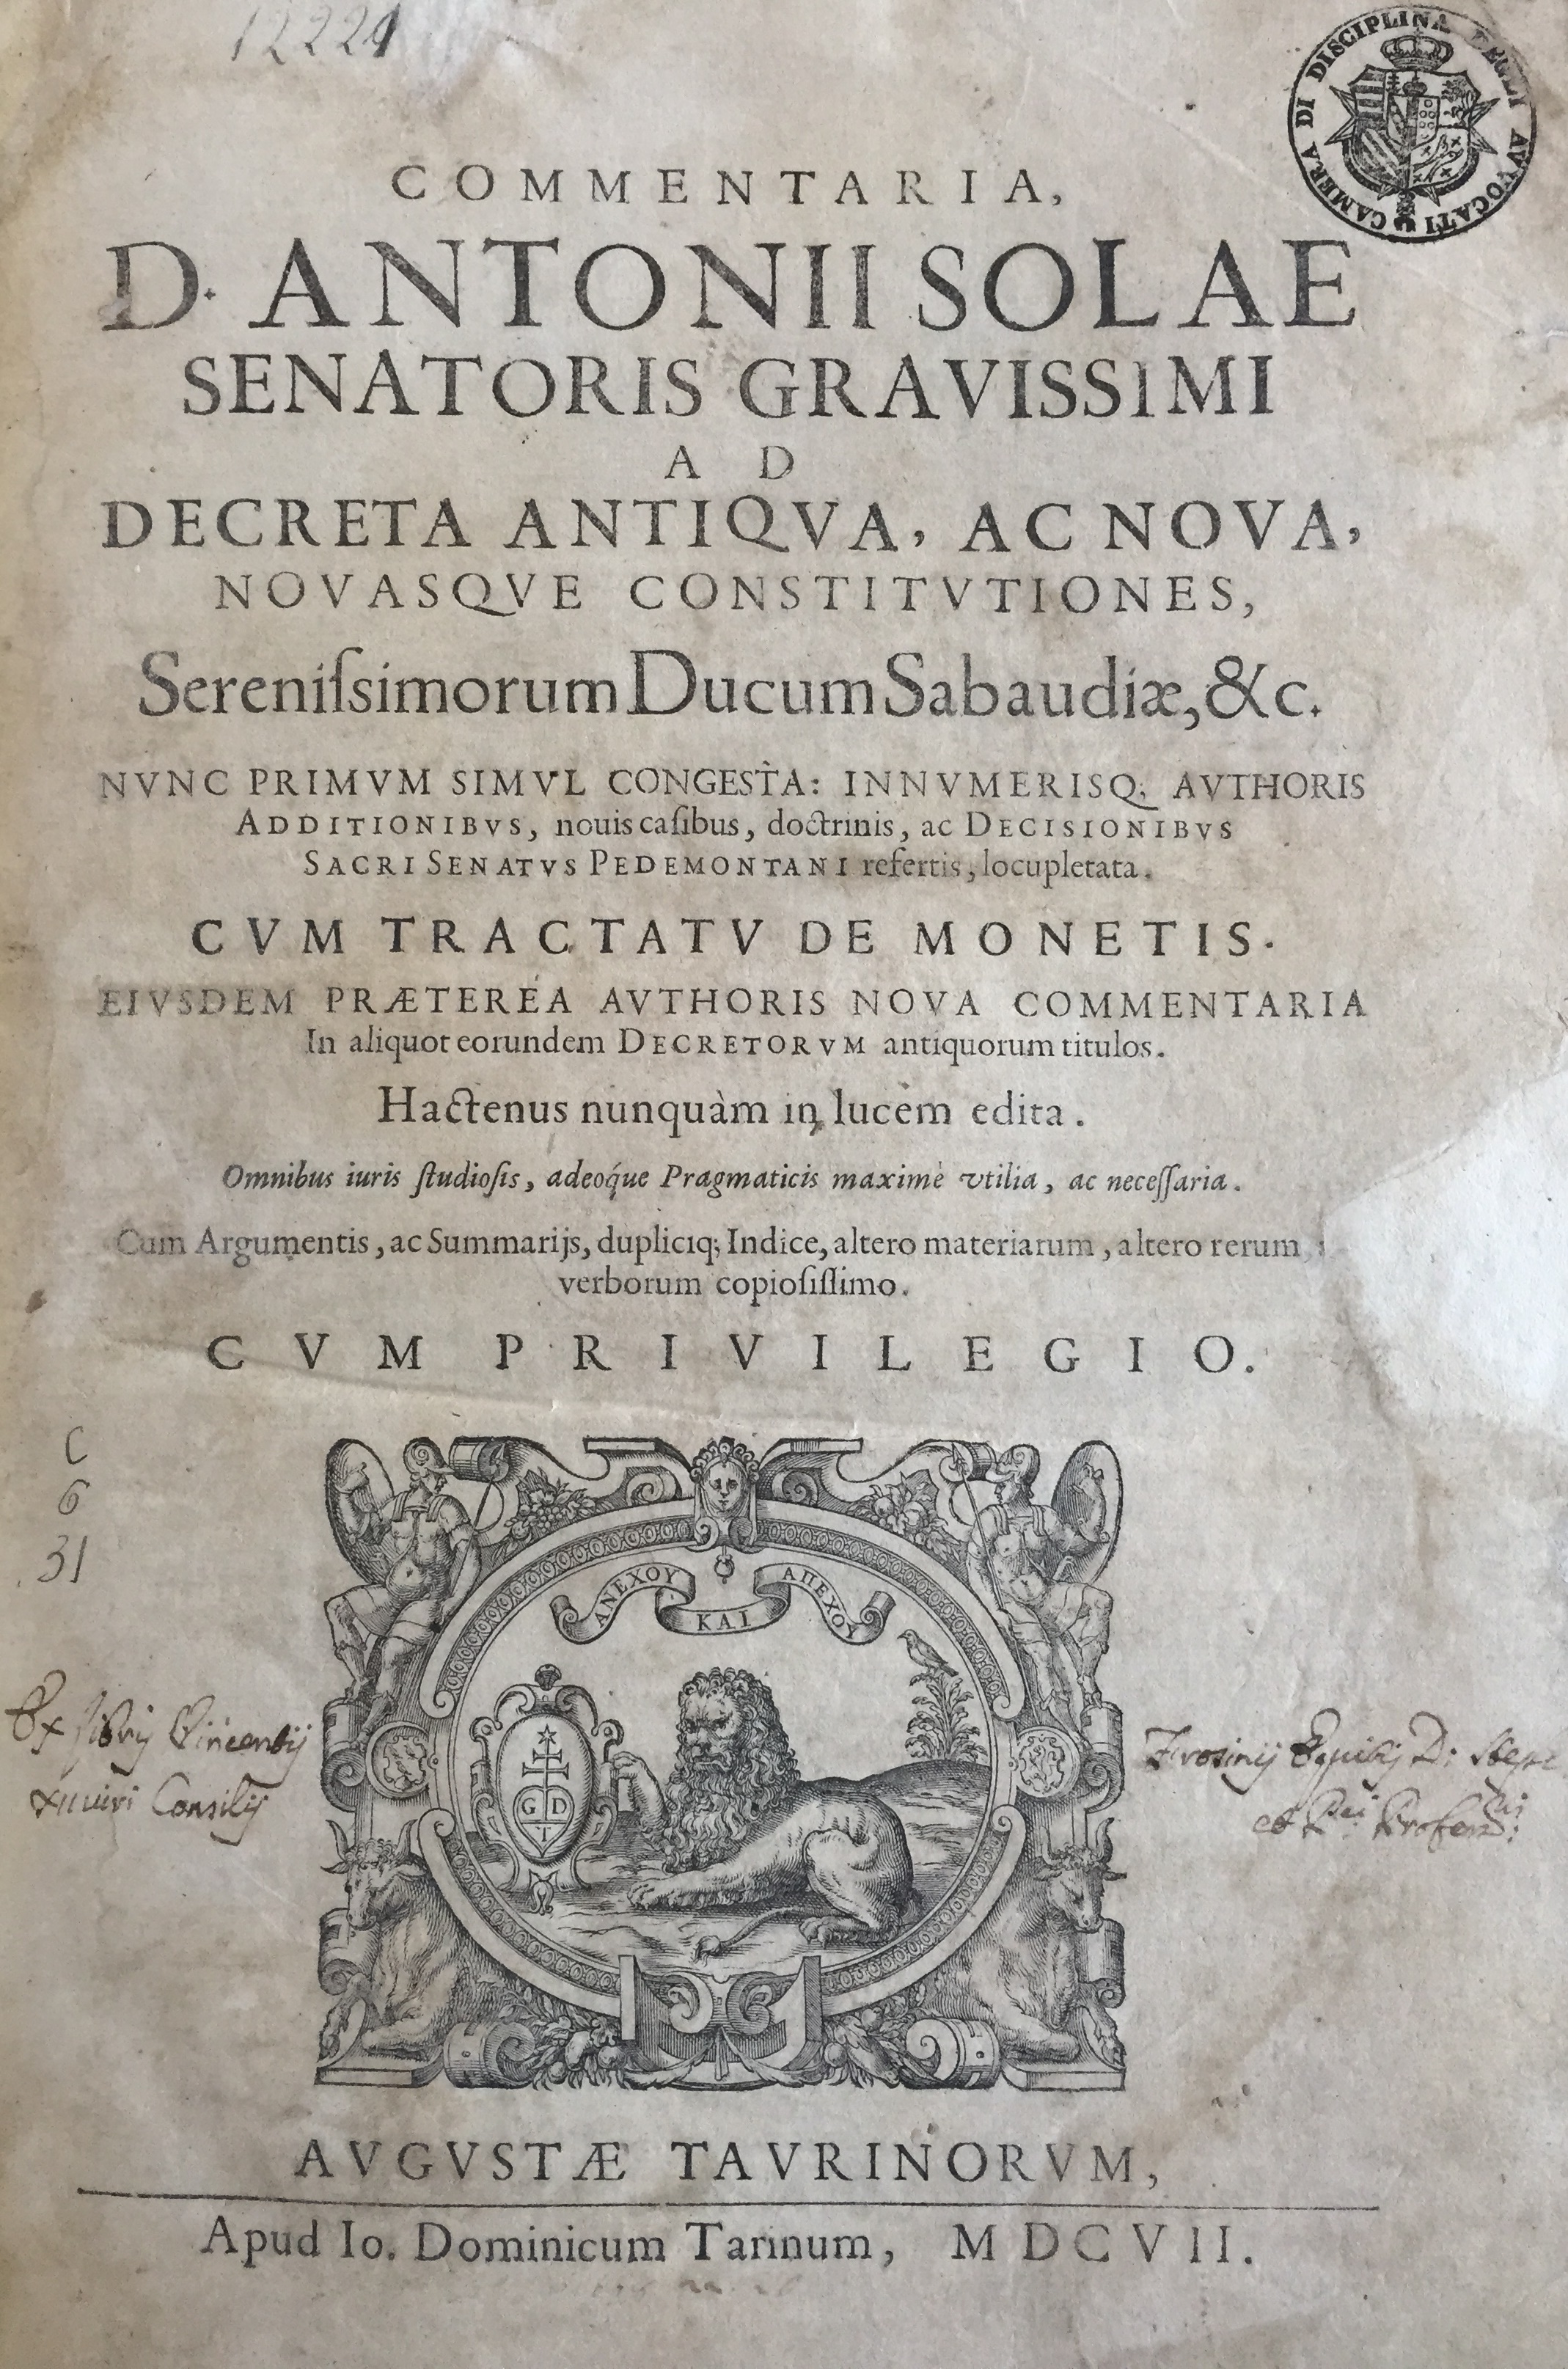 Commentaria, D. Antonii Solae senatoris gravissimi ad decreta antiqua, ac nova, novasque constitutiones, serenissimorum ducum Sabaudiae, &c.